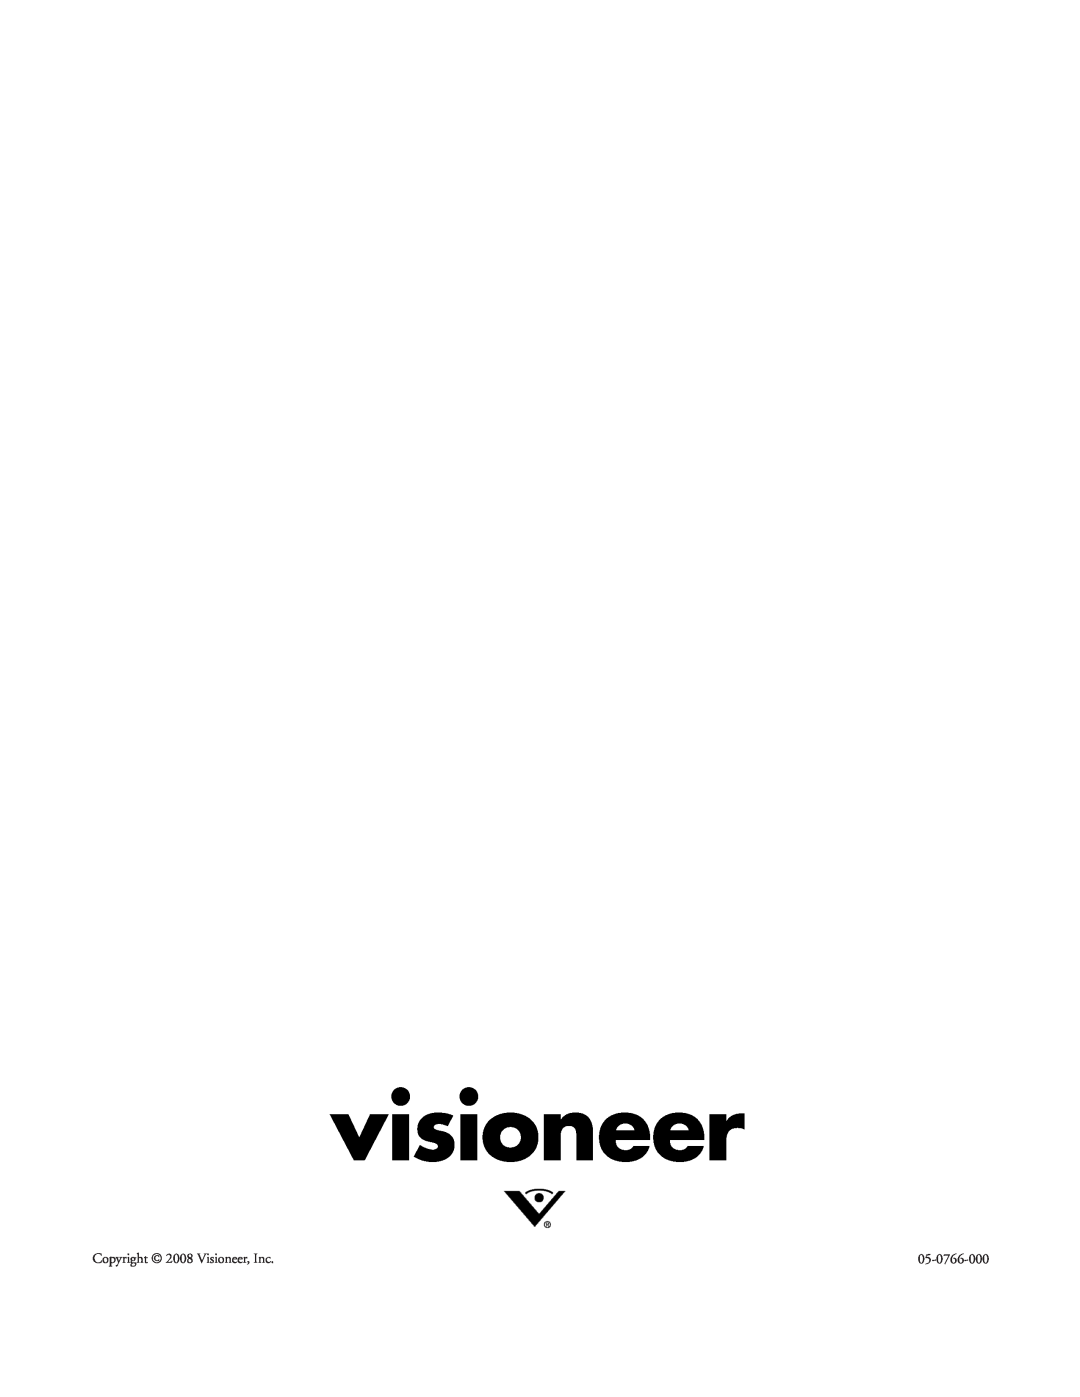 Visioneer 480 manual visioneer, Copyright 2008 Visioneer, Inc, 05-0766-000 